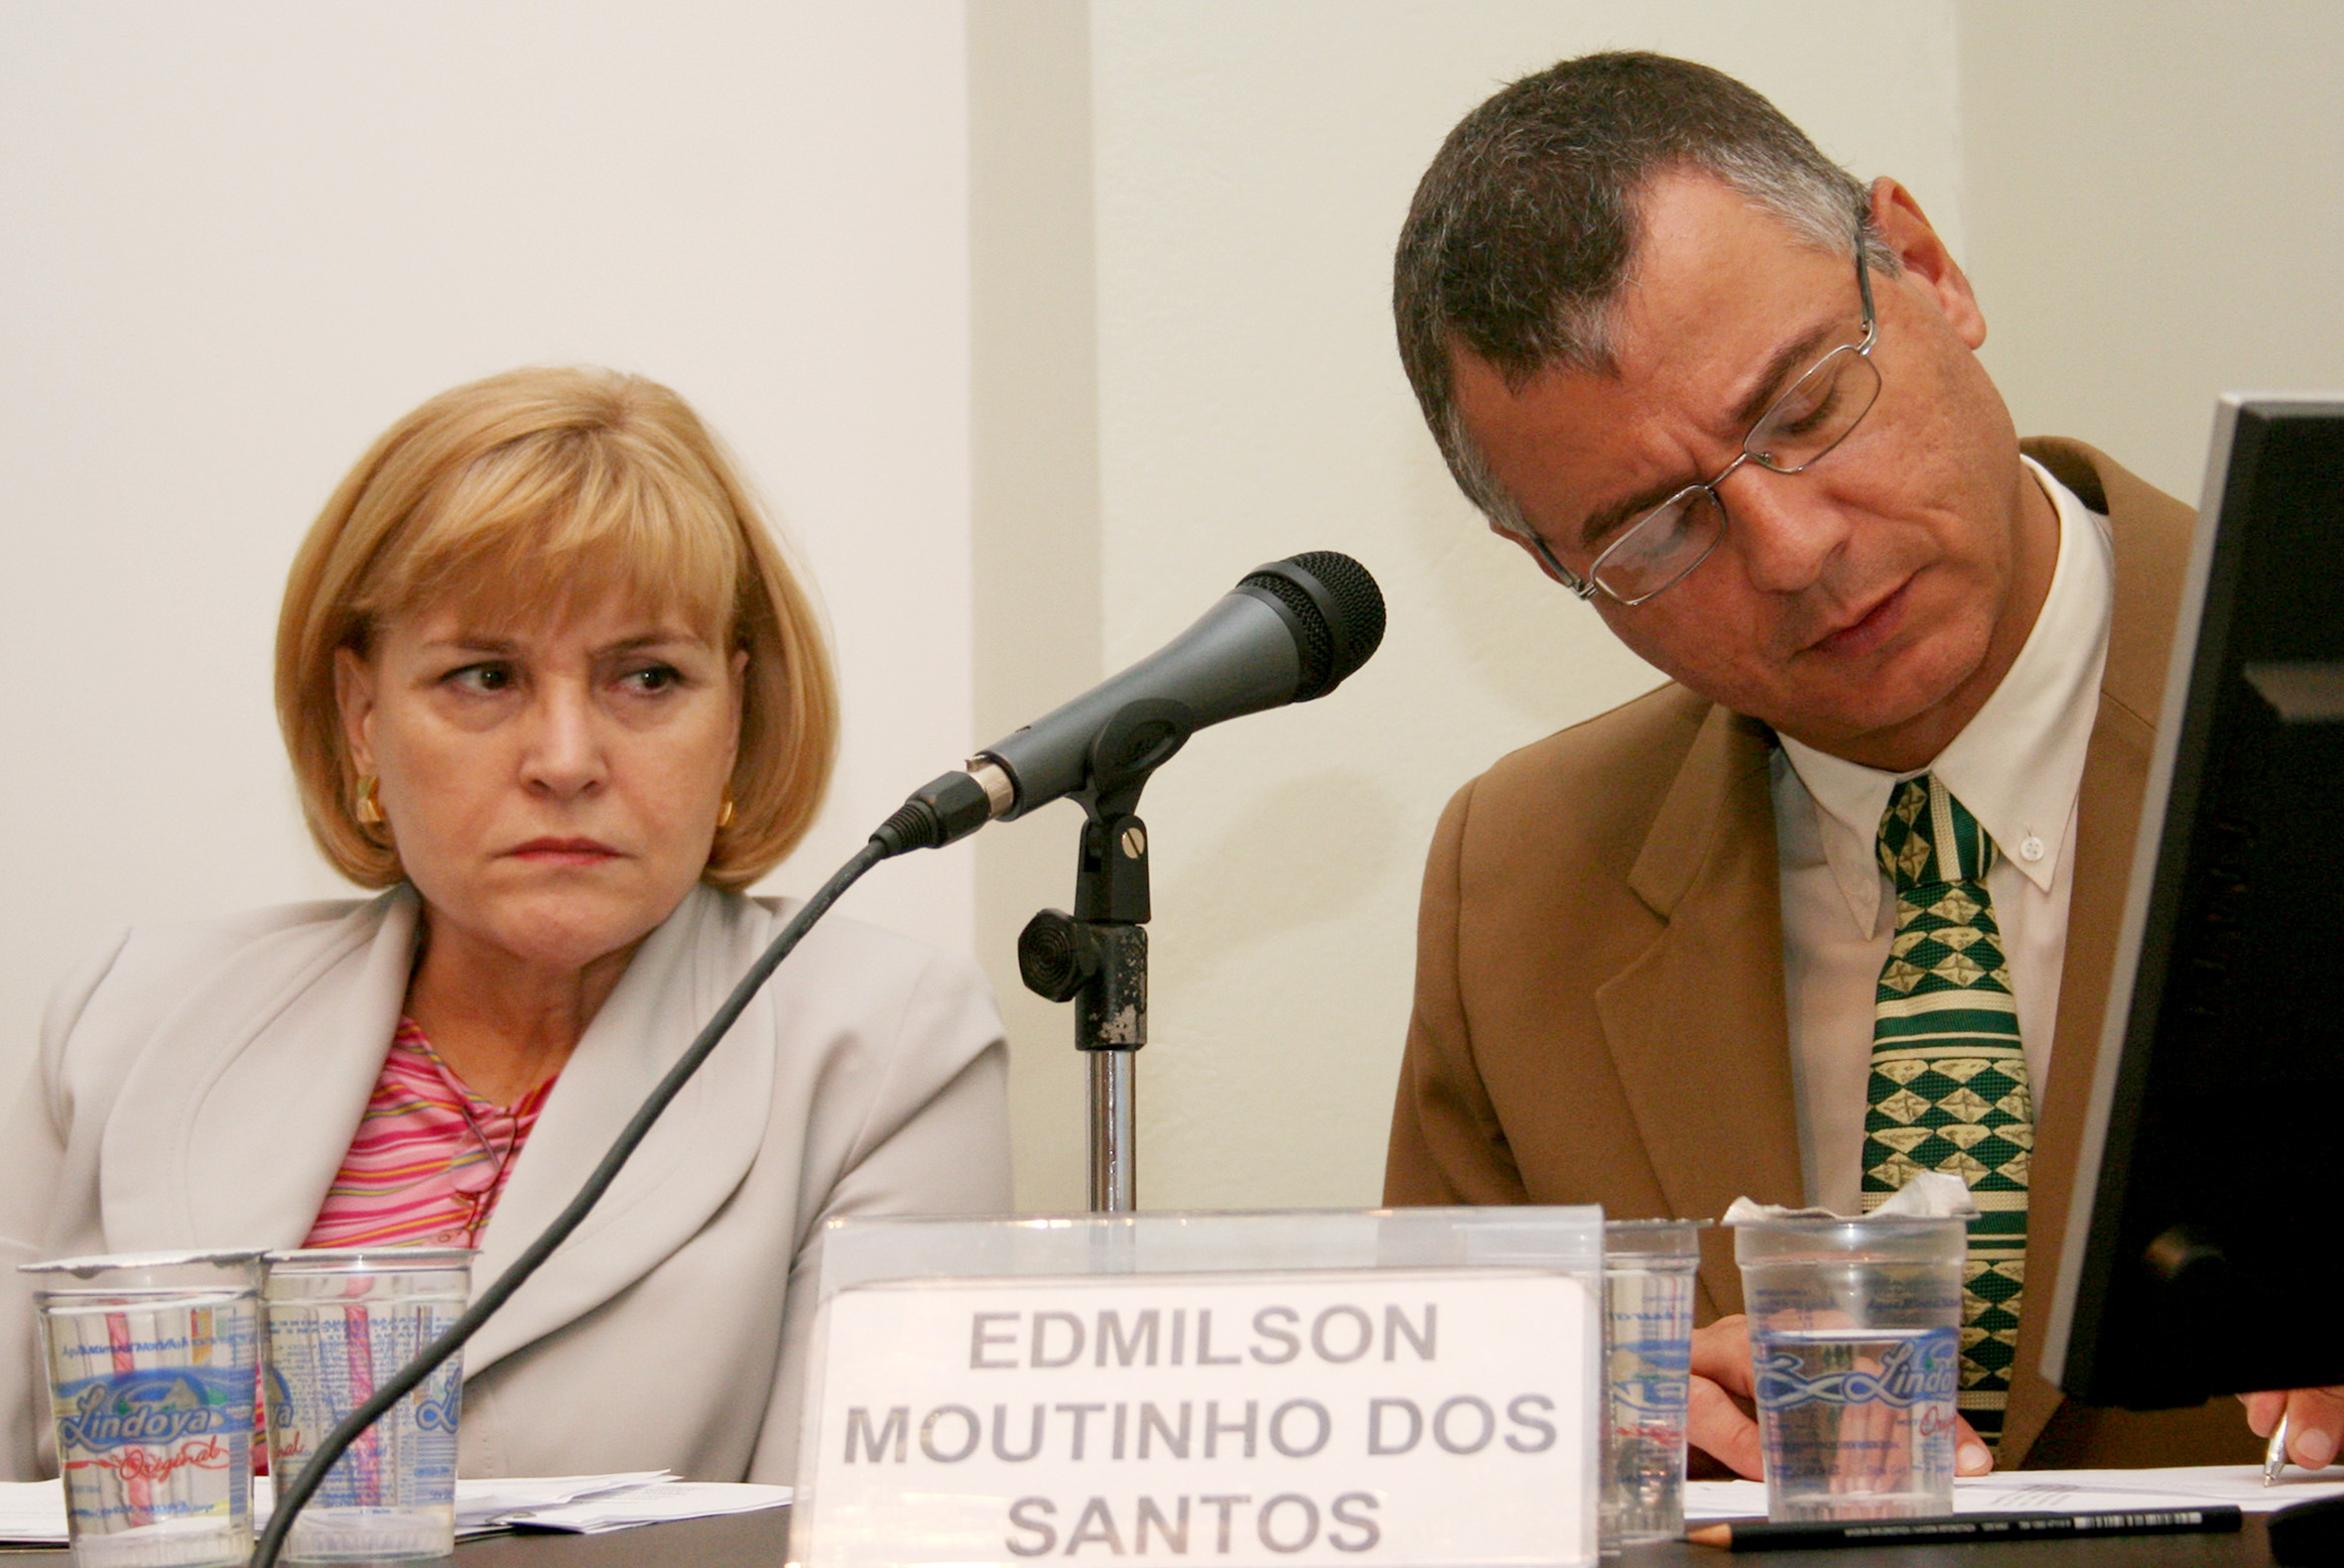 Maria D'Assunção Costa e Edmilson Moutinho dos Santos